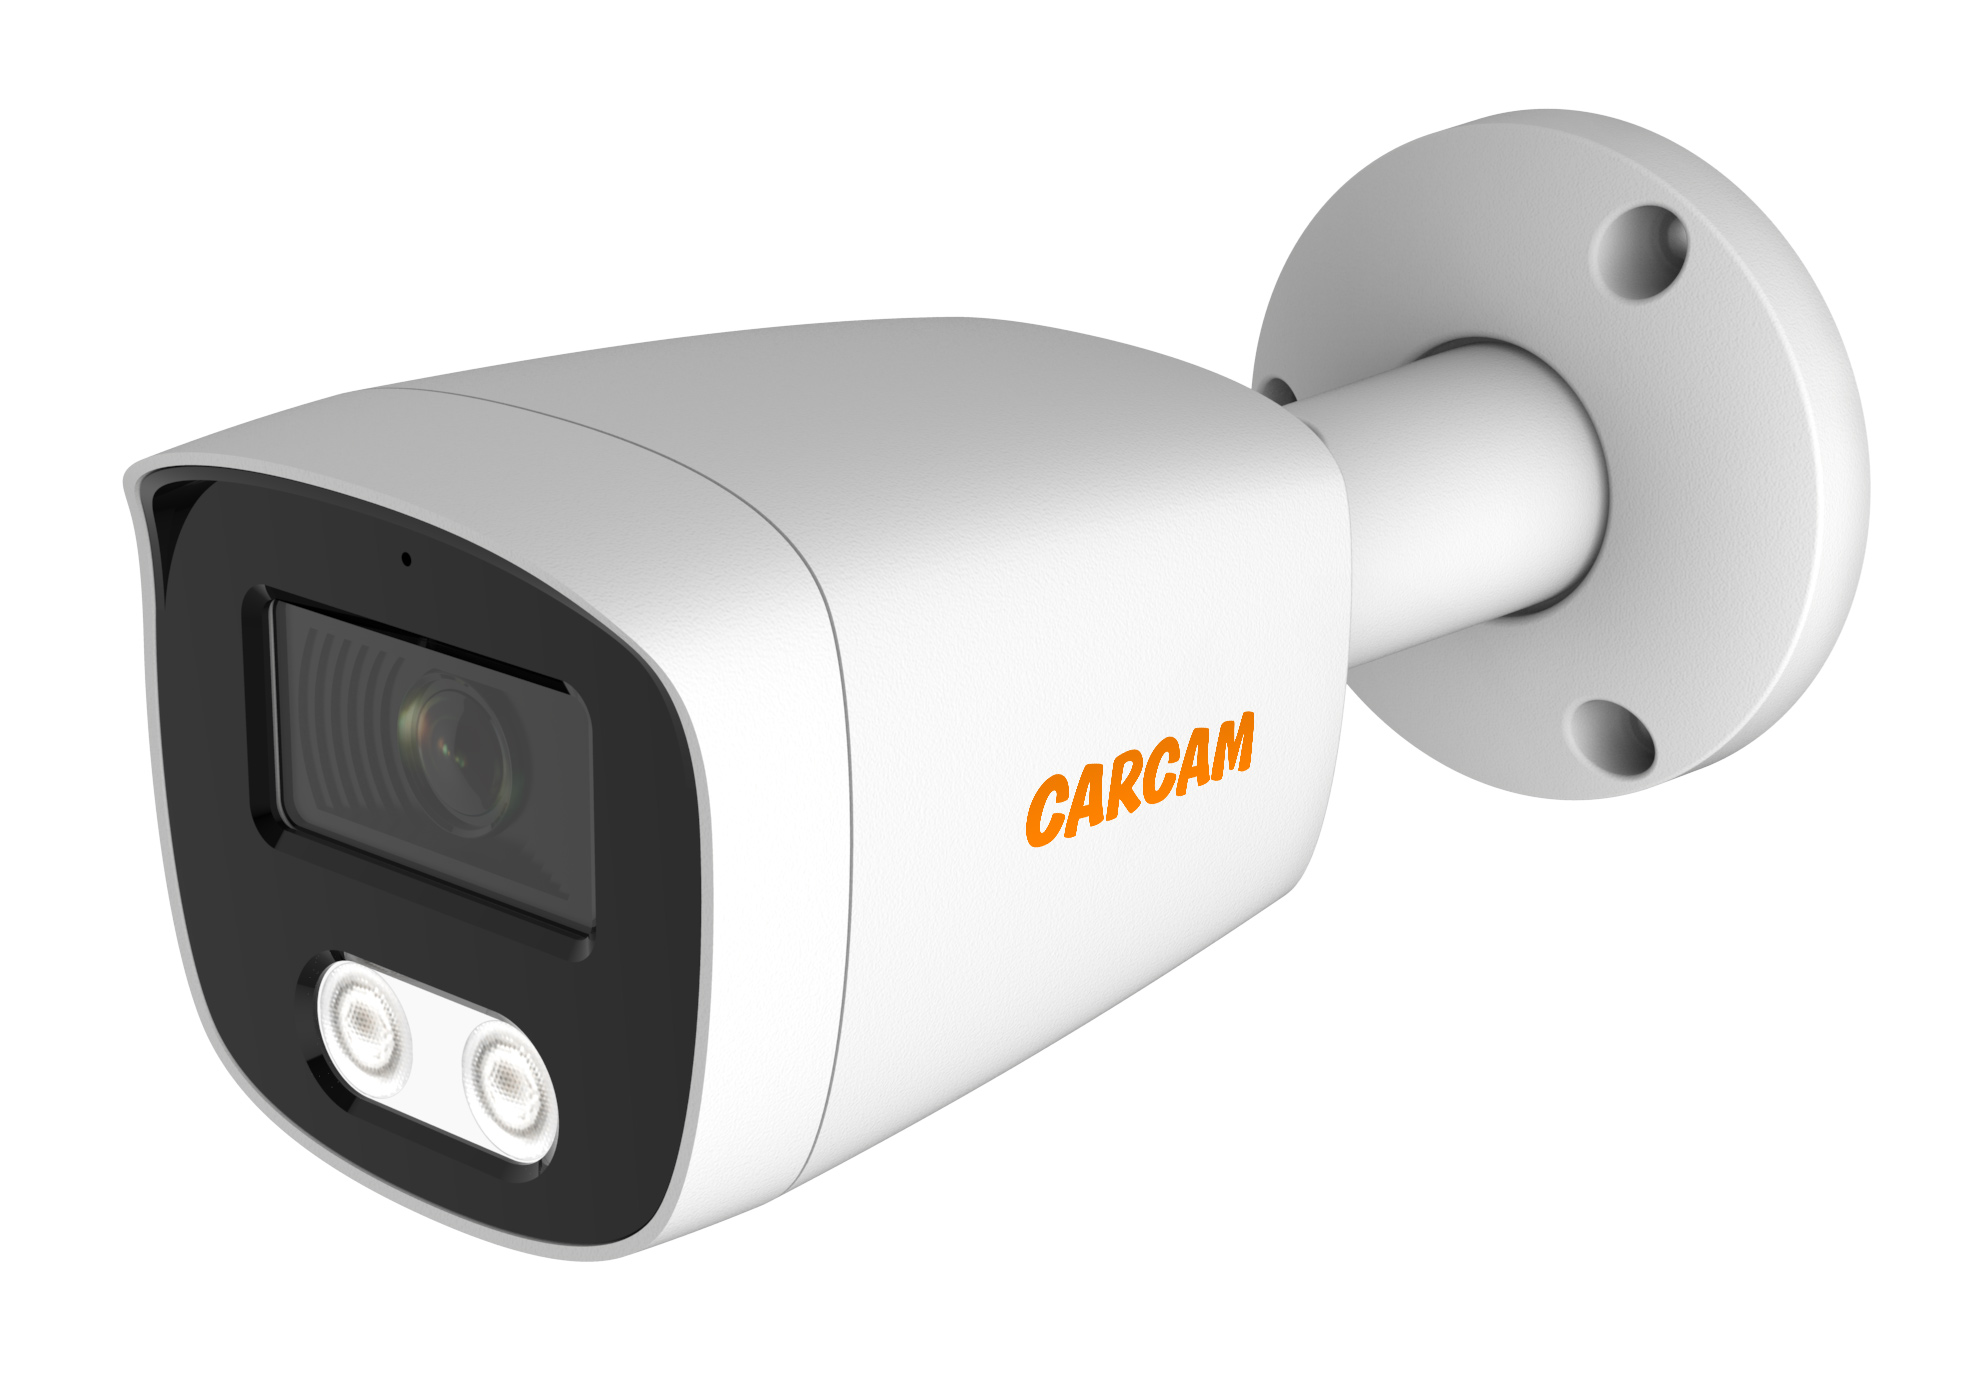 Цилиндрическая IP-камера CARCAM 2MP Bullet IP Camera 2168SDM цилиндрическая ahd камера carcam 5mp bullet hd camera 5142 2 8 12mm